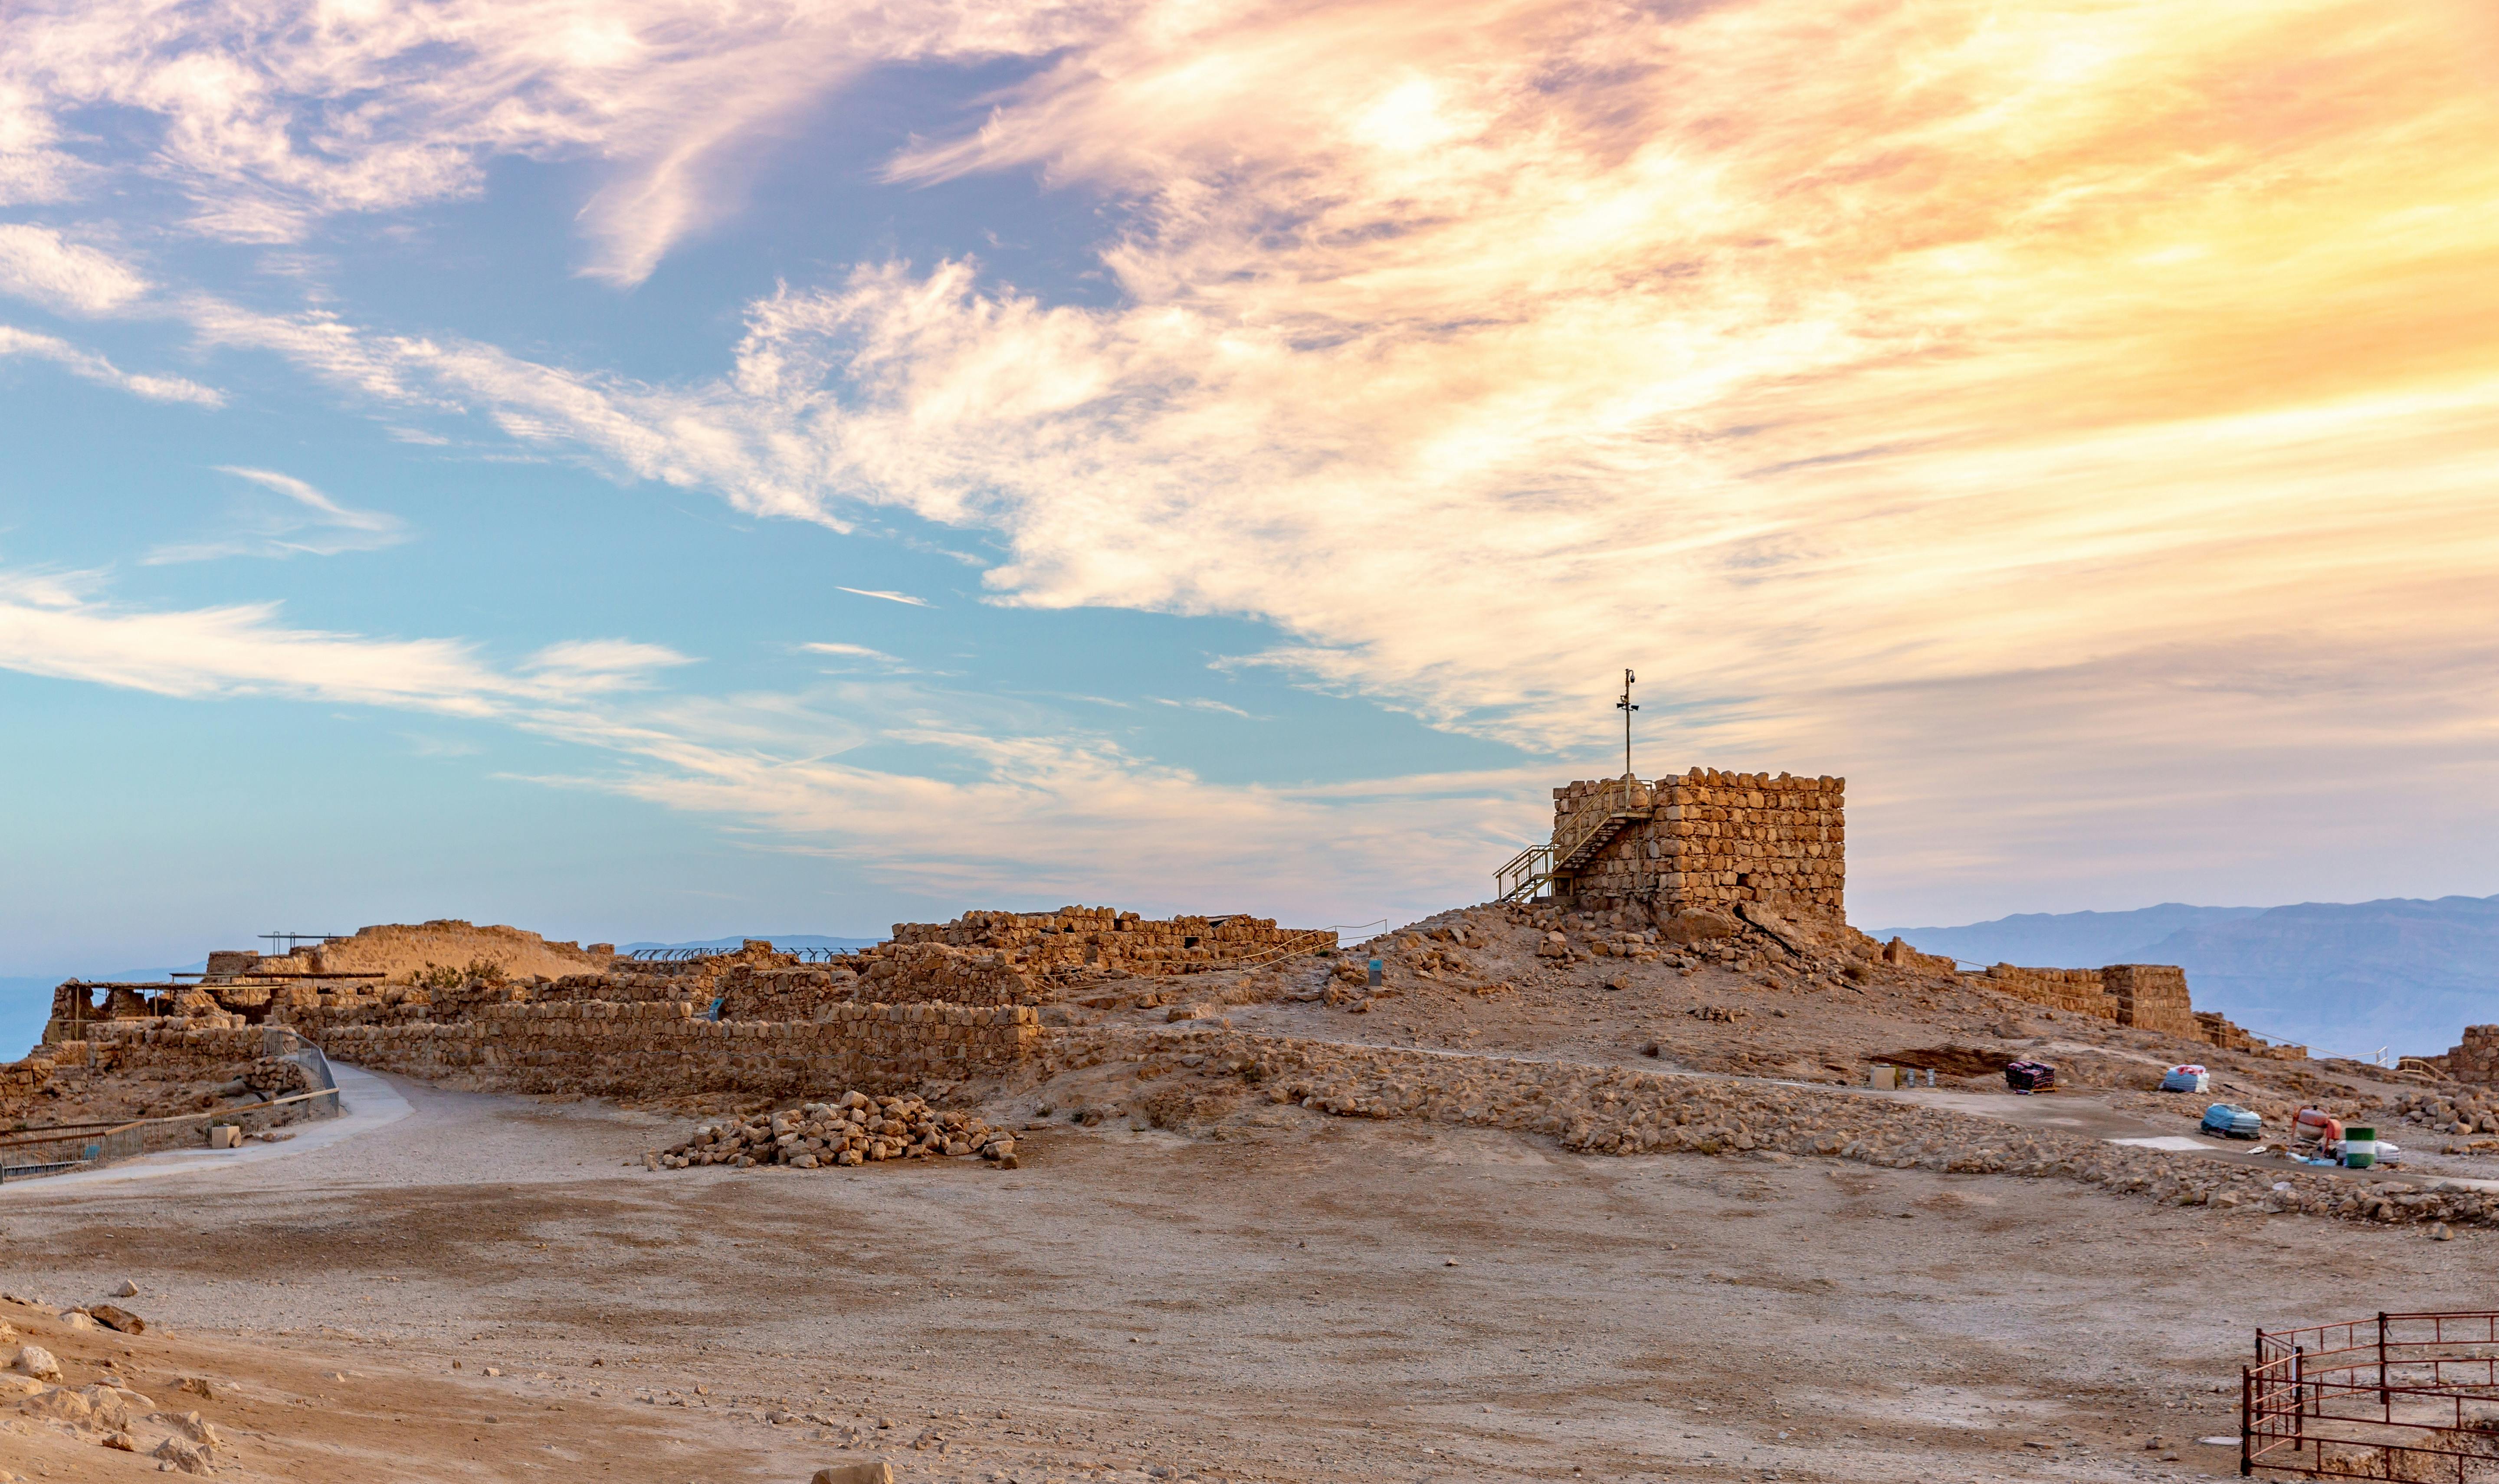 Excursão a pé autoguiada com áudio pela fortaleza de Masada em Israel